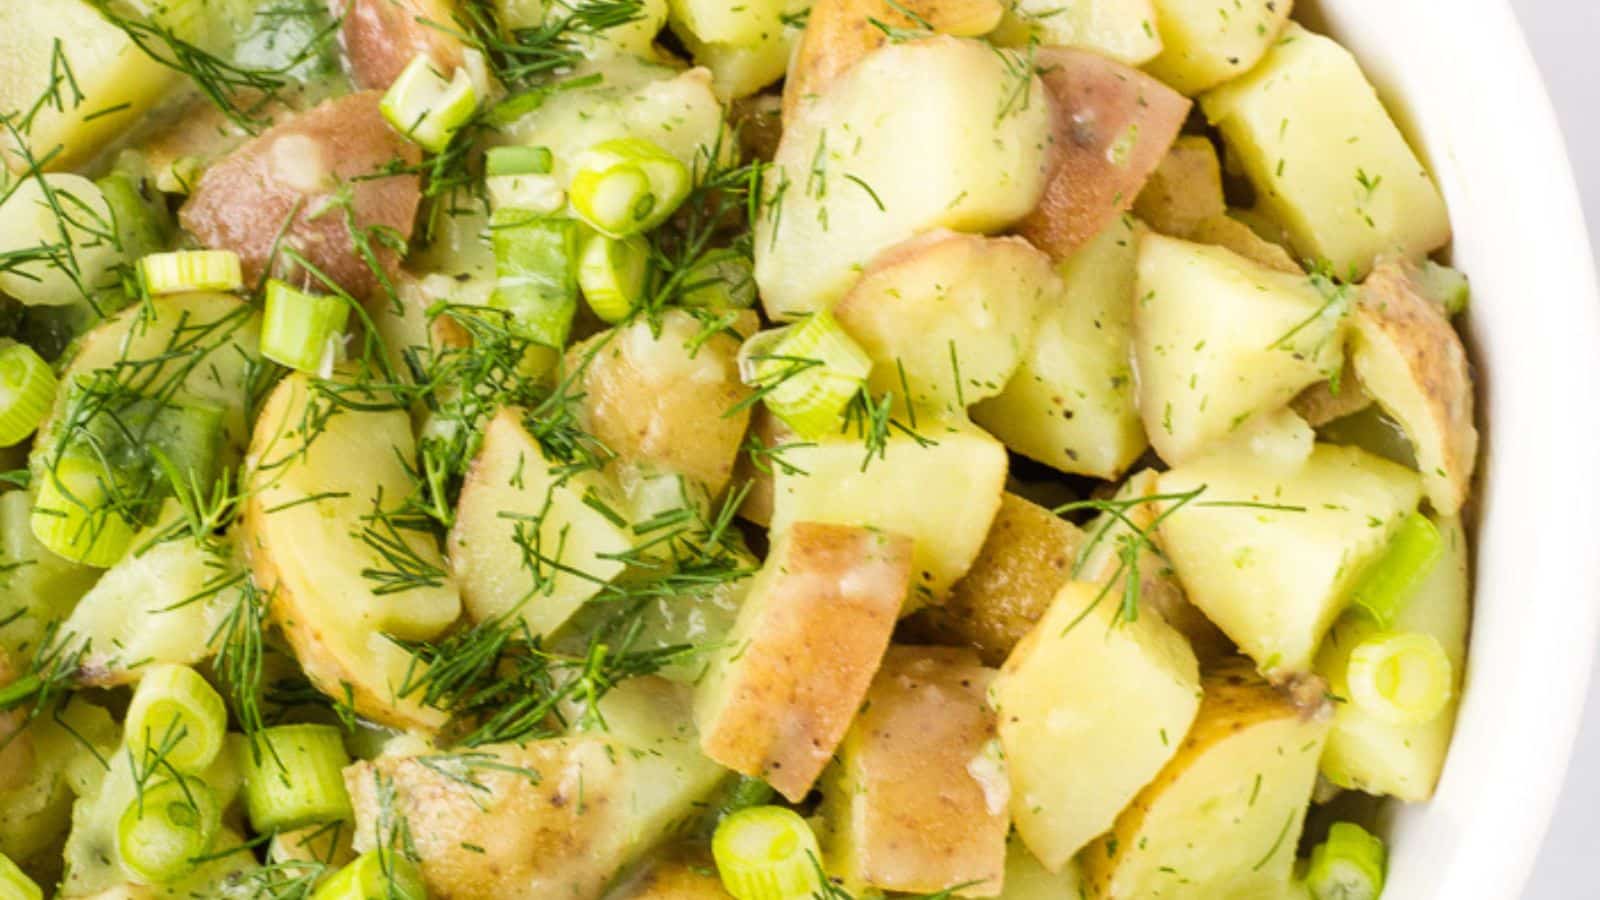 Close up of potato salad.
